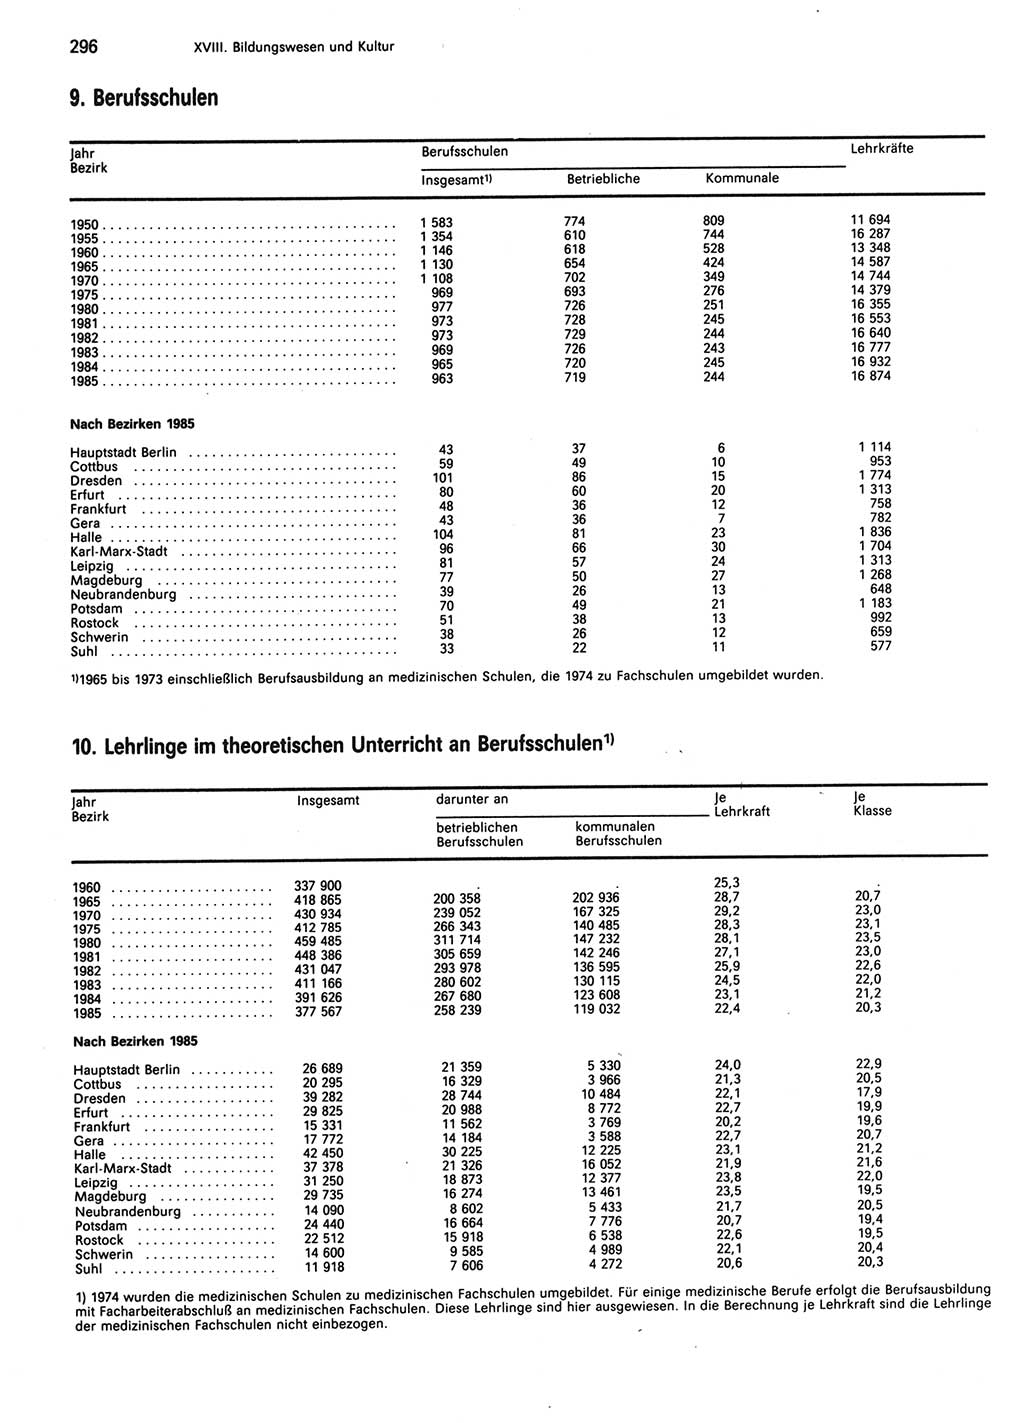 Statistisches Jahrbuch der Deutschen Demokratischen Republik (DDR) 1986, Seite 296 (Stat. Jb. DDR 1986, S. 296)